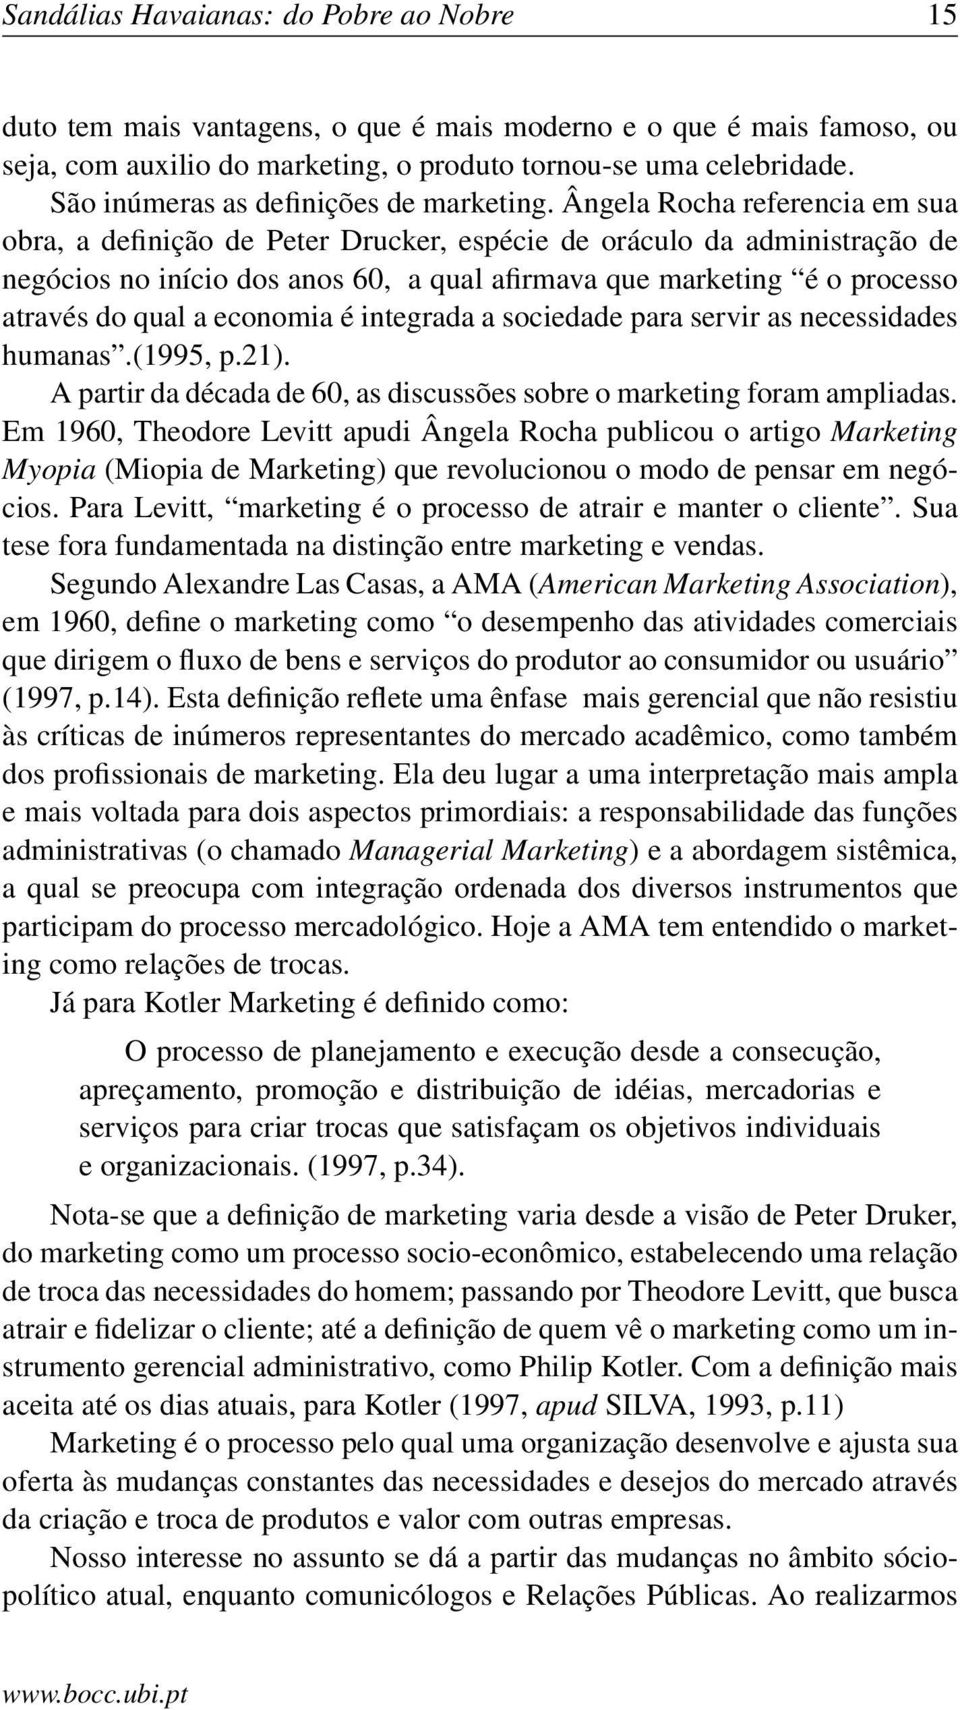 Ângela Rocha referencia em sua obra, a definição de Peter Drucker, espécie de oráculo da administração de negócios no início dos anos 60, a qual afirmava que marketing é o processo através do qual a